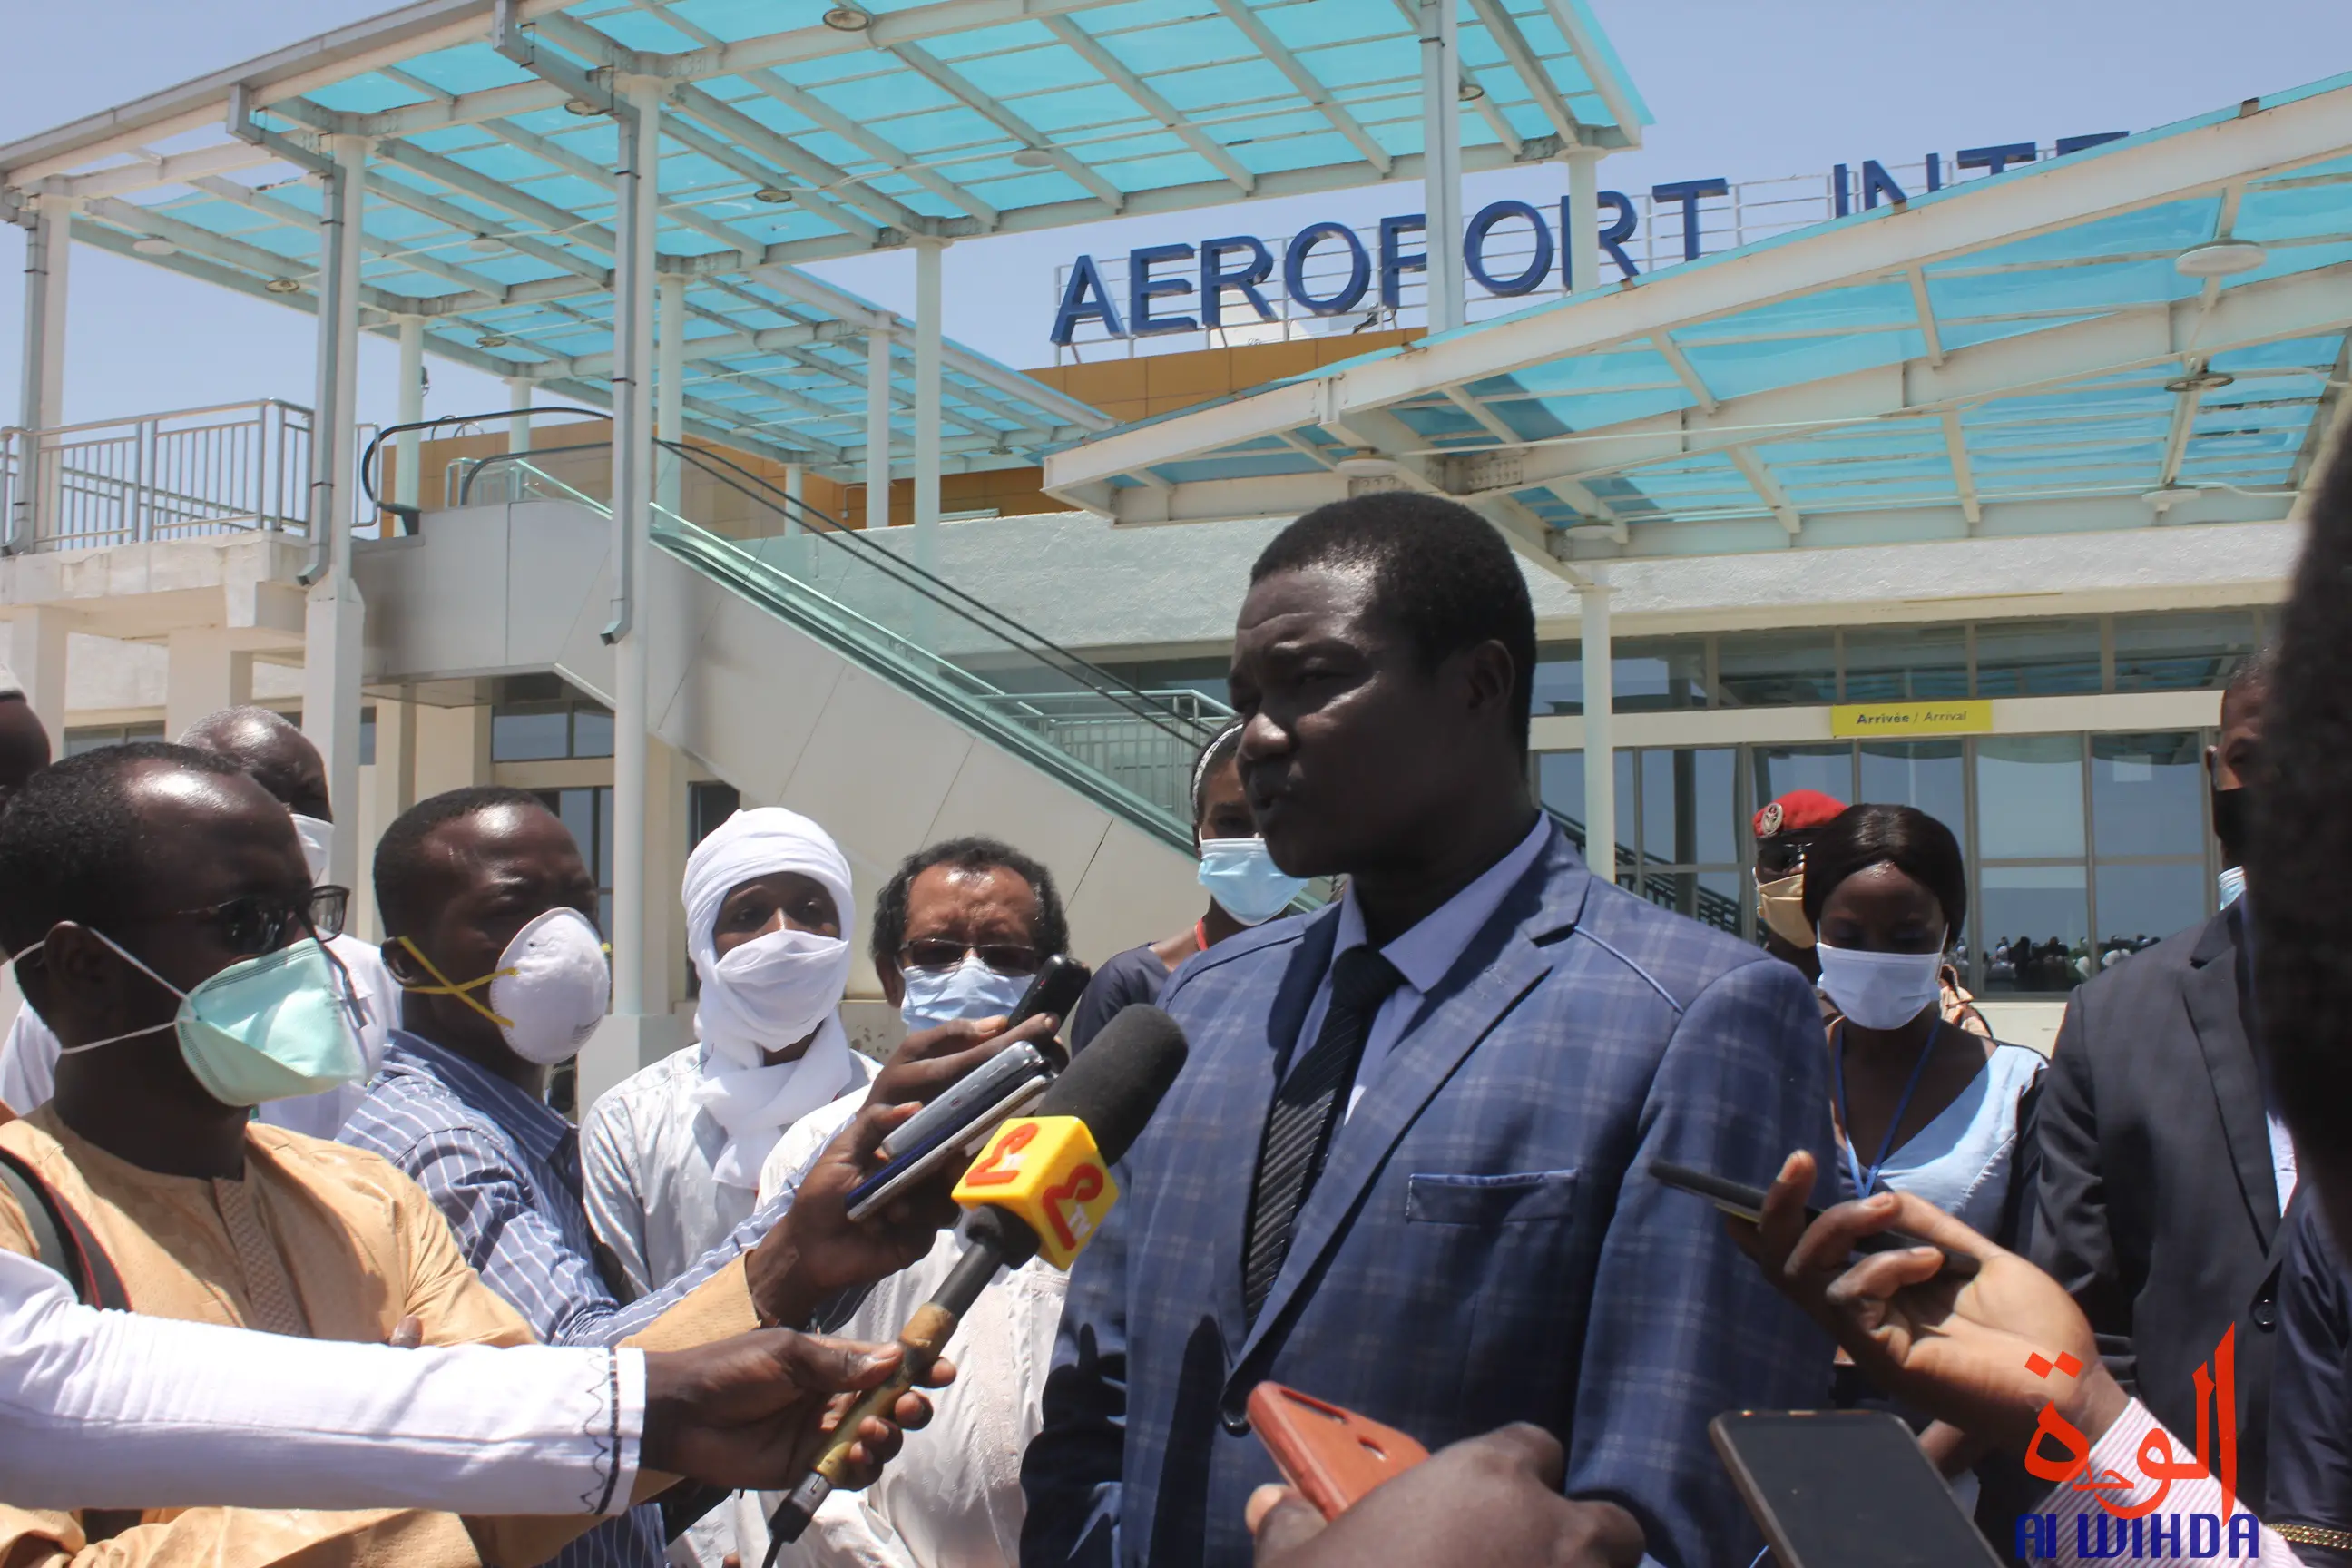 Tchad : l’aéroport de N’Djamena est prêt pour la réouverture dès demain